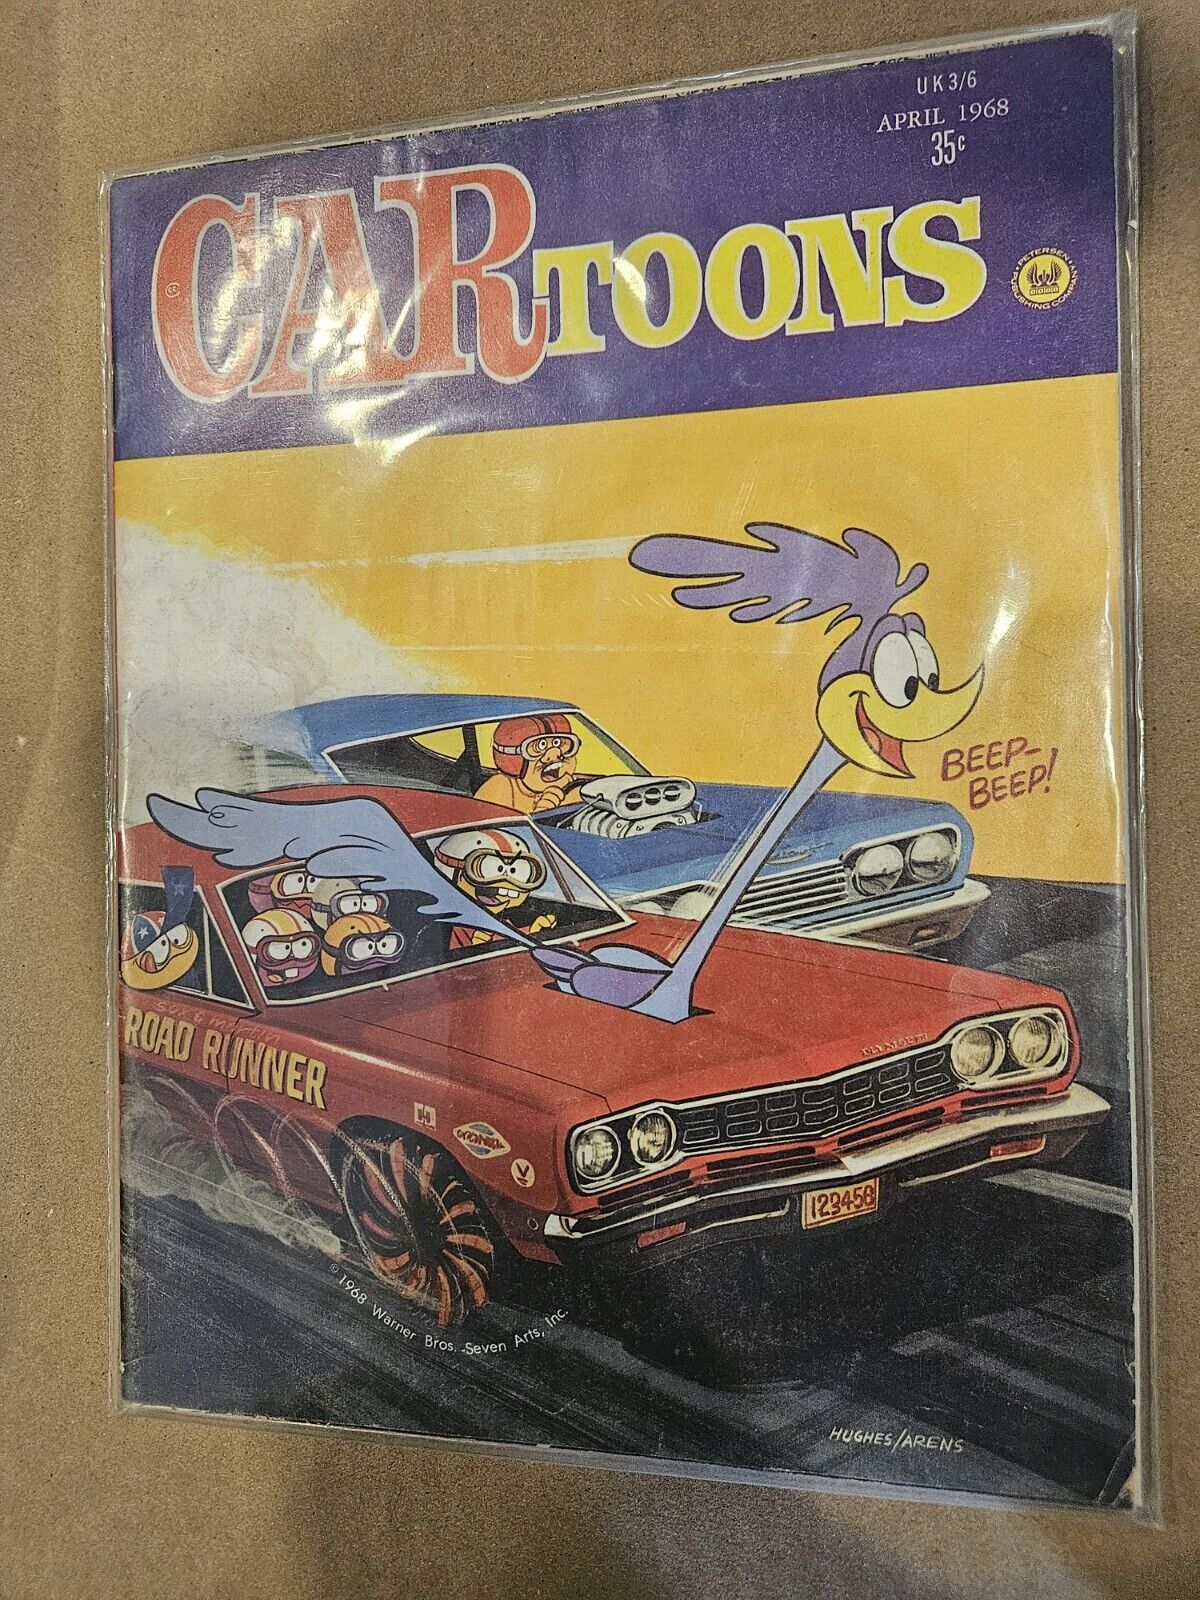 Vintage Sealed April 1968 CARtoons Magazine, Roadrunner Cover